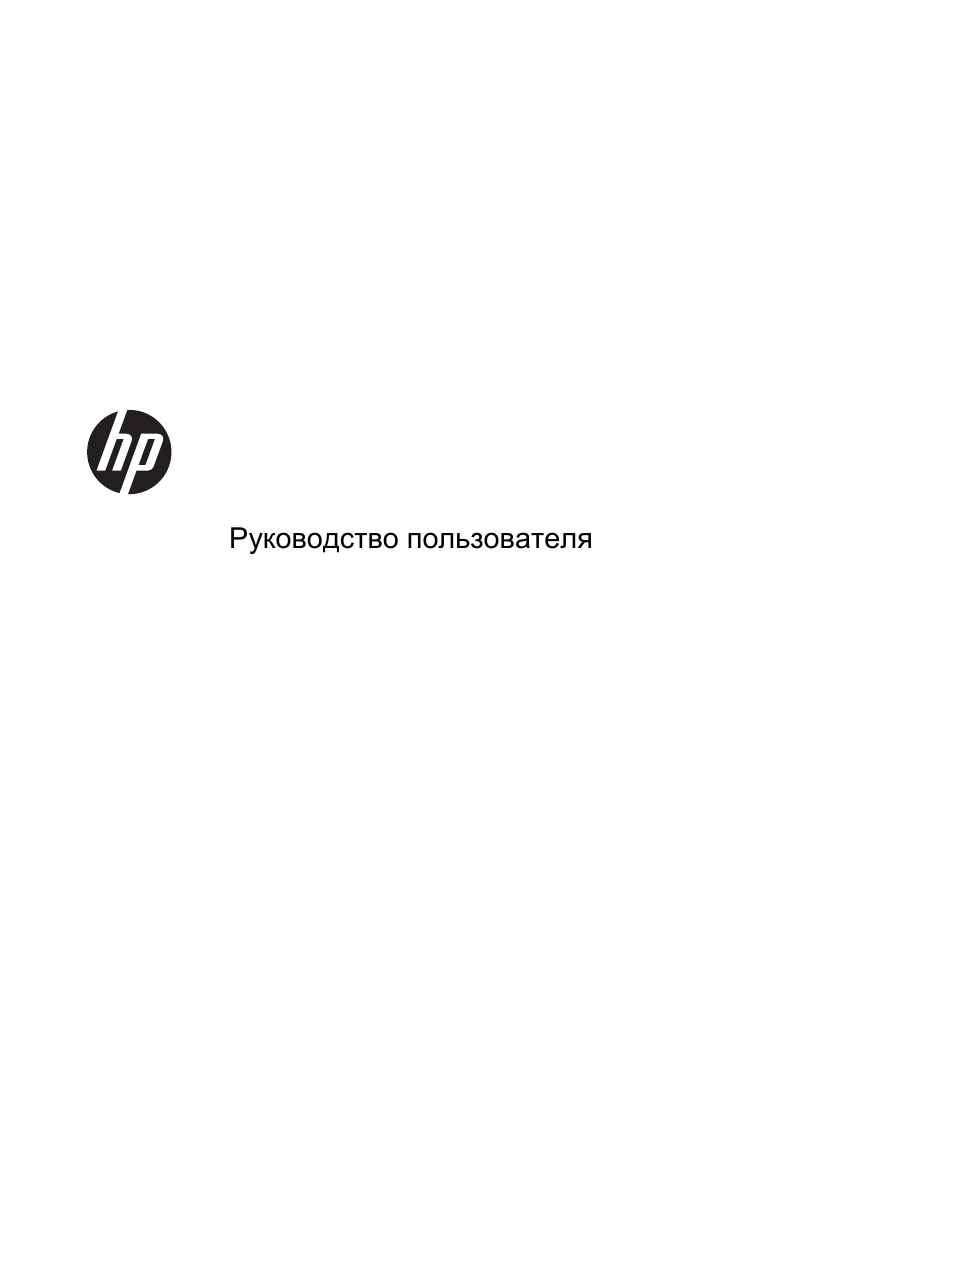 Инструкция по эксплуатации HP Планшетный ПК HP ElitePad 1000 G2 | 59 страниц